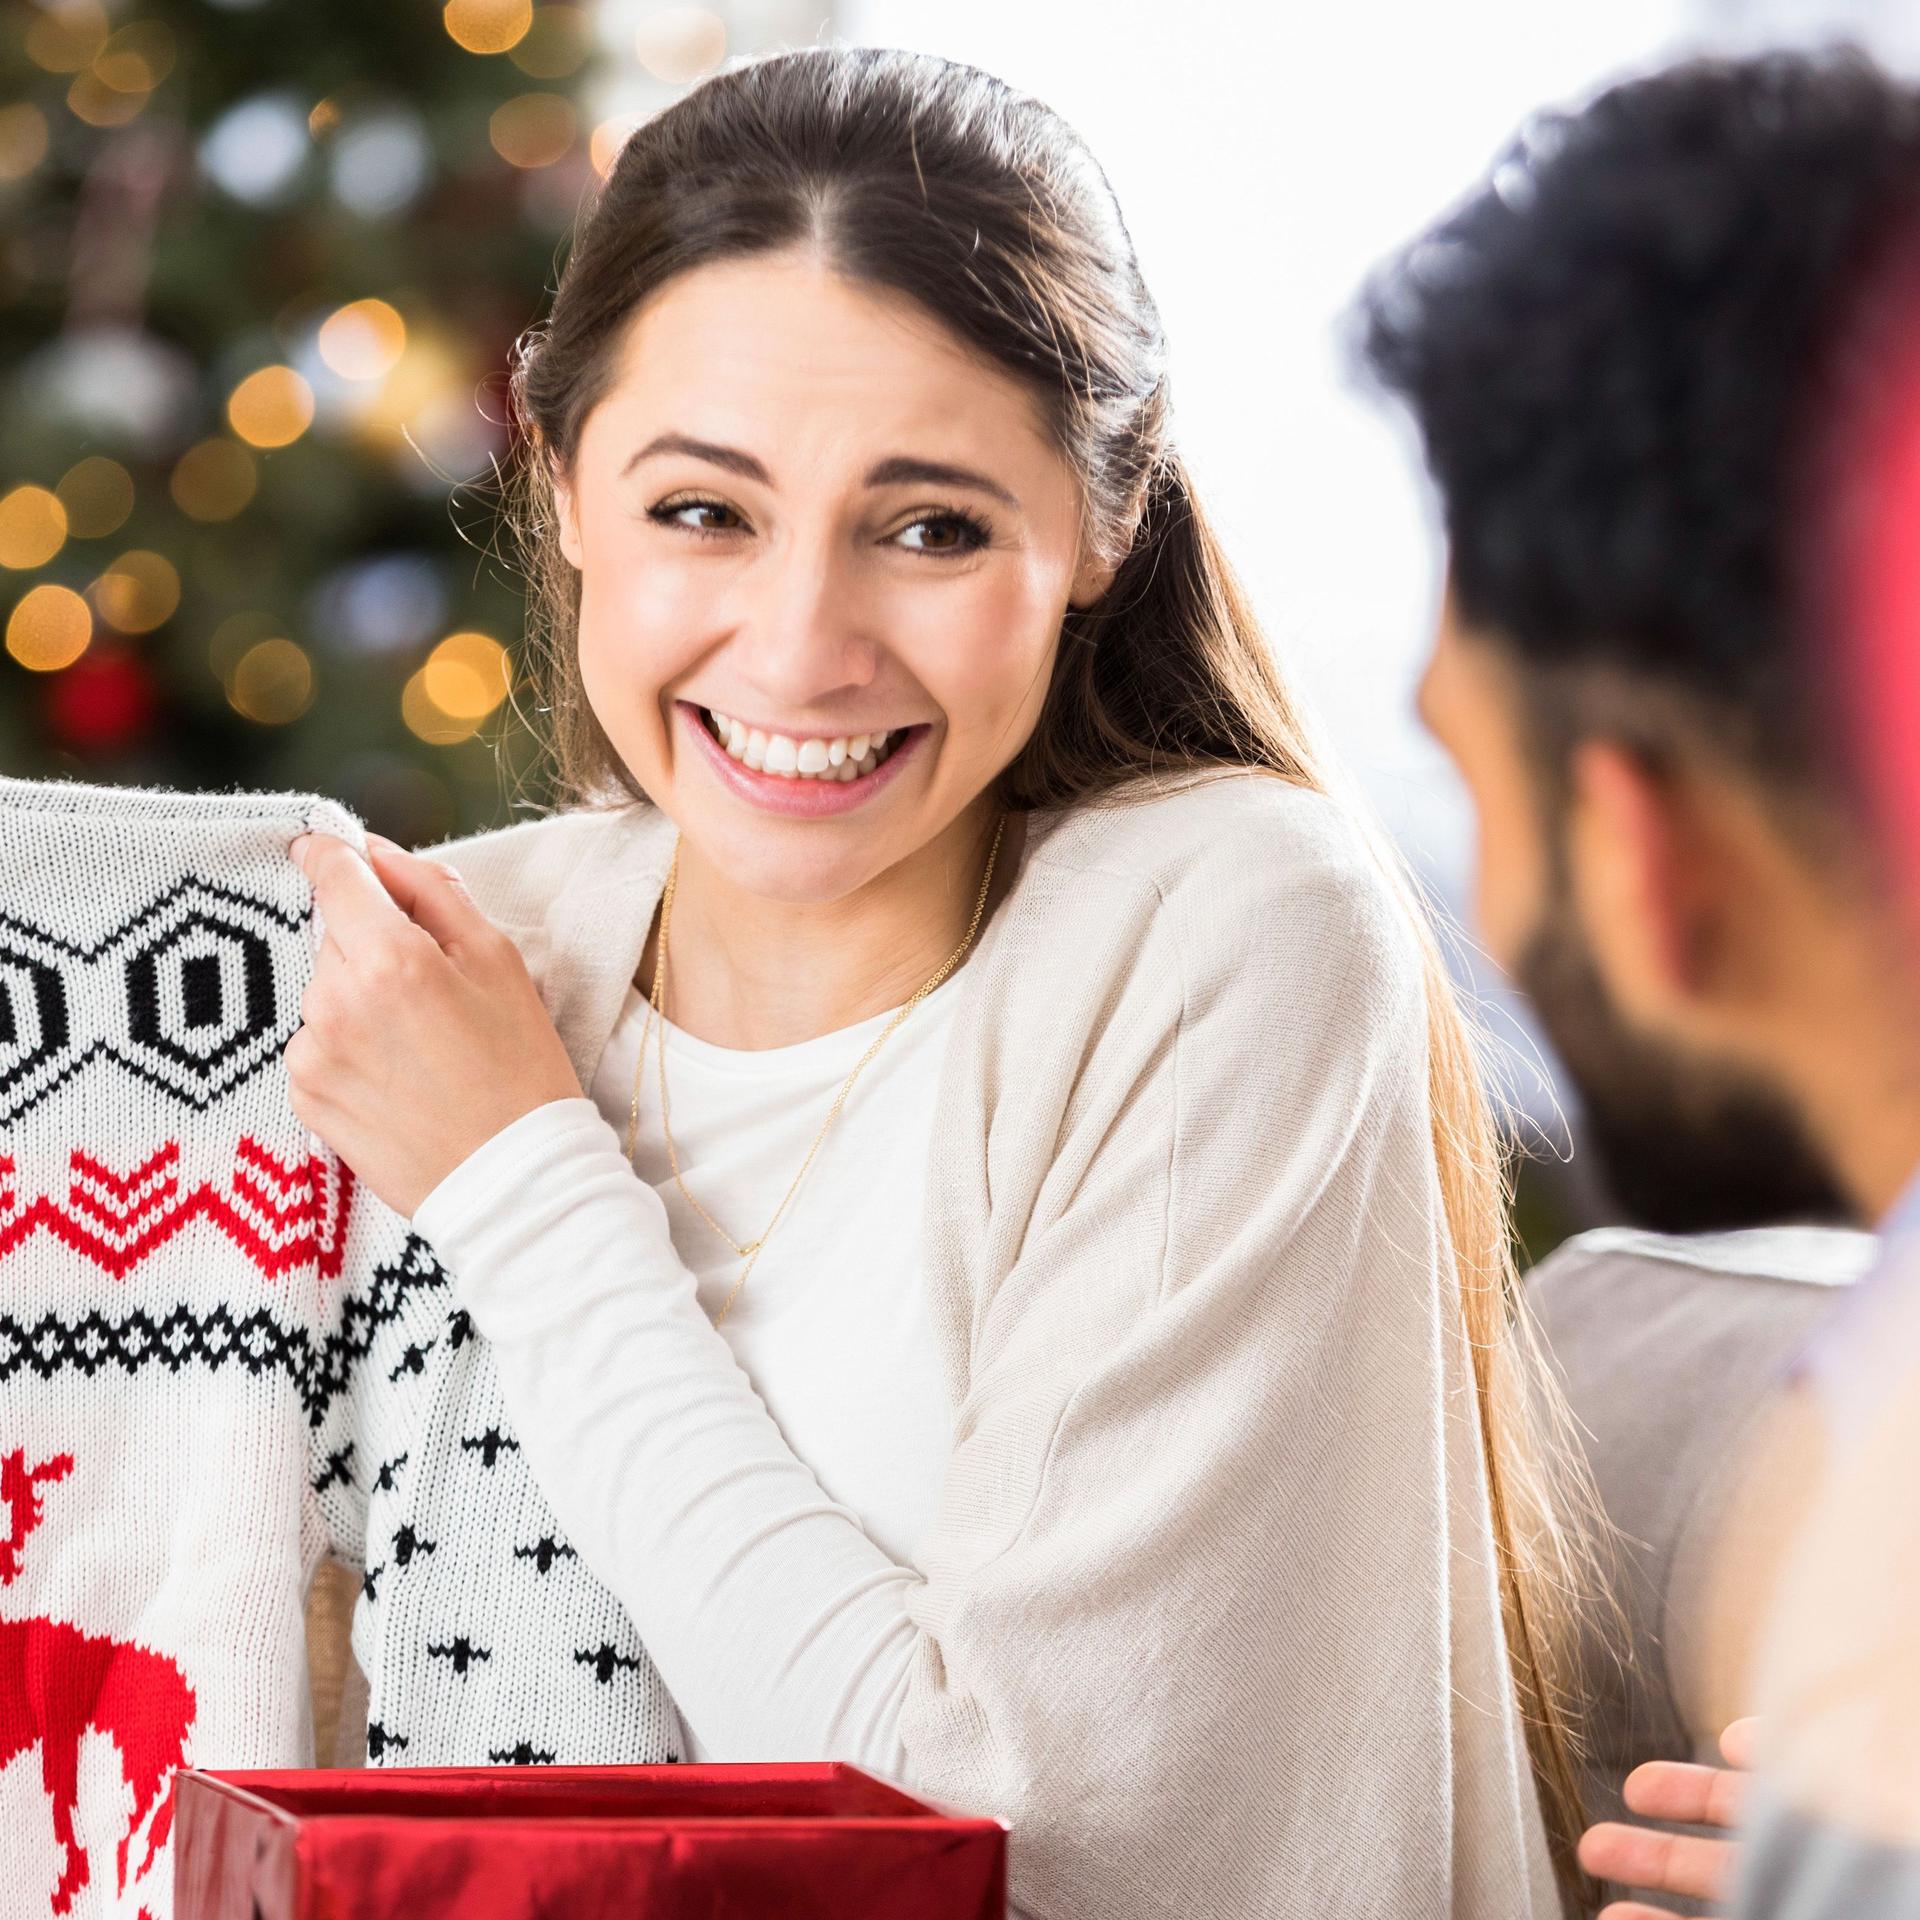 Eine junge Frau lächelt und verzieht das Gesicht, während sie einen Weihnachtspullover hochhält und ihn einem Mann zeigt.